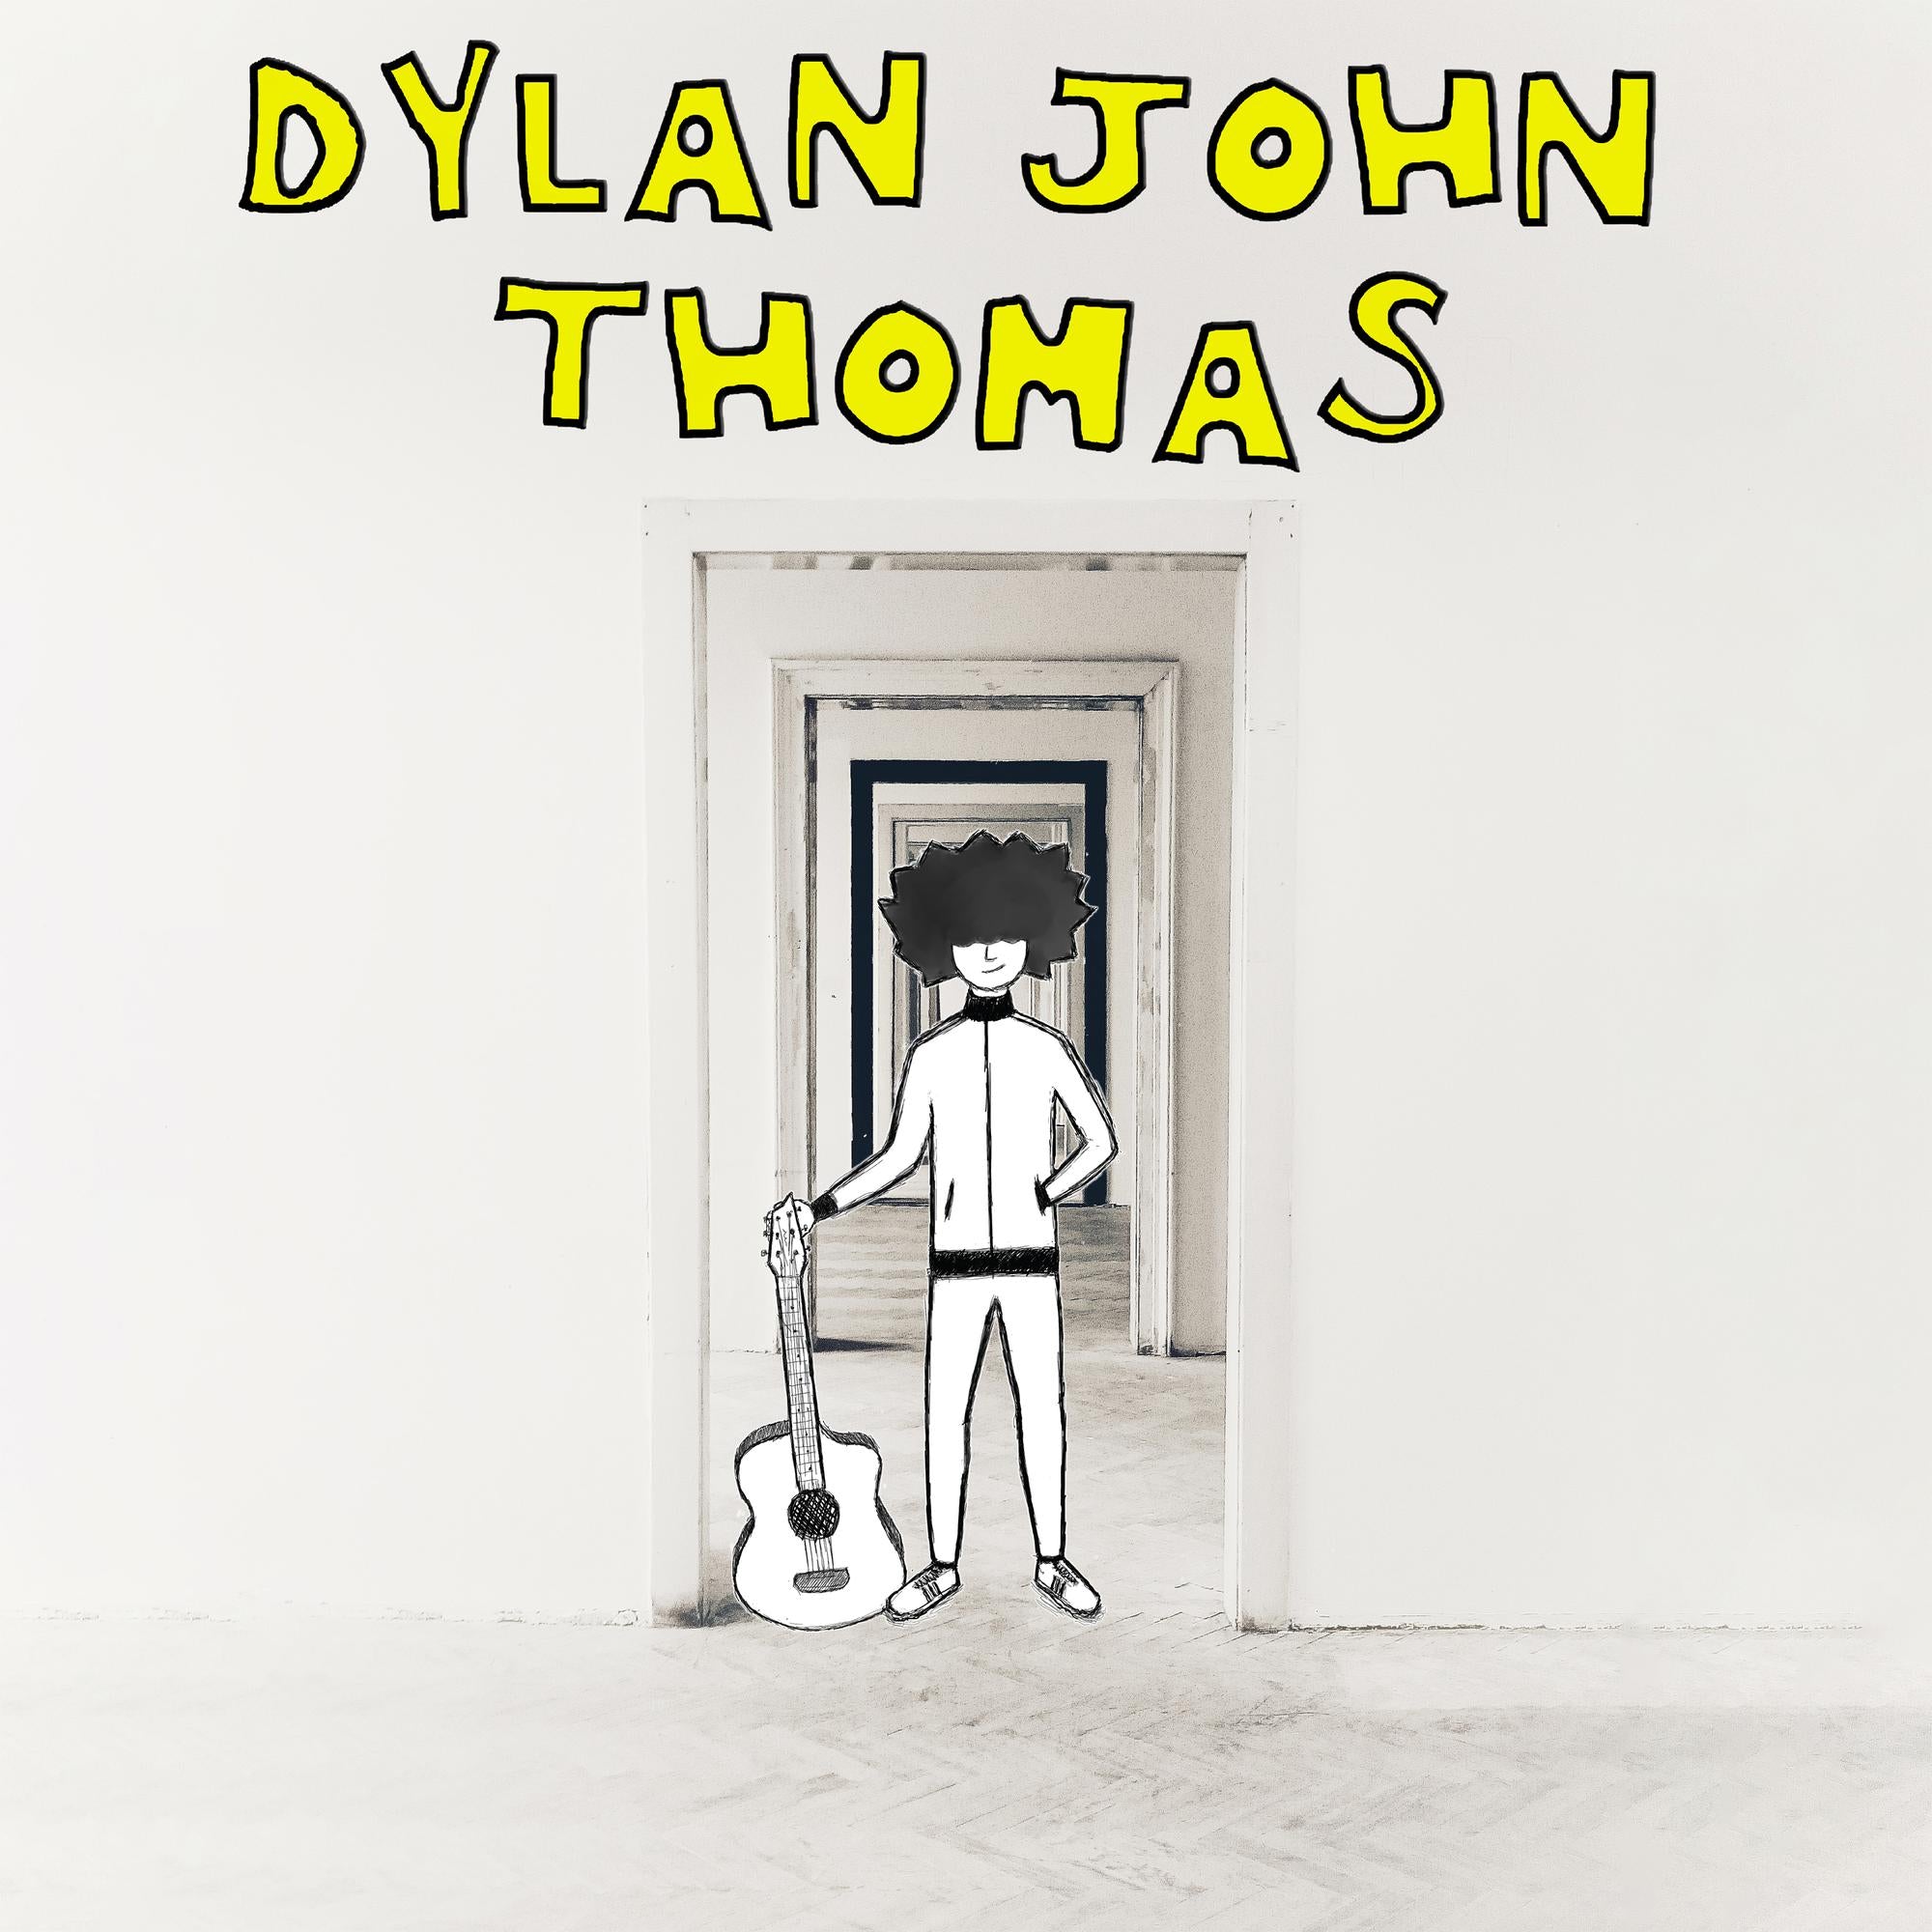 DYLAN JOHN THOMAS - Dylan John Thomas - LP - Black Vinyl [JAN 26]